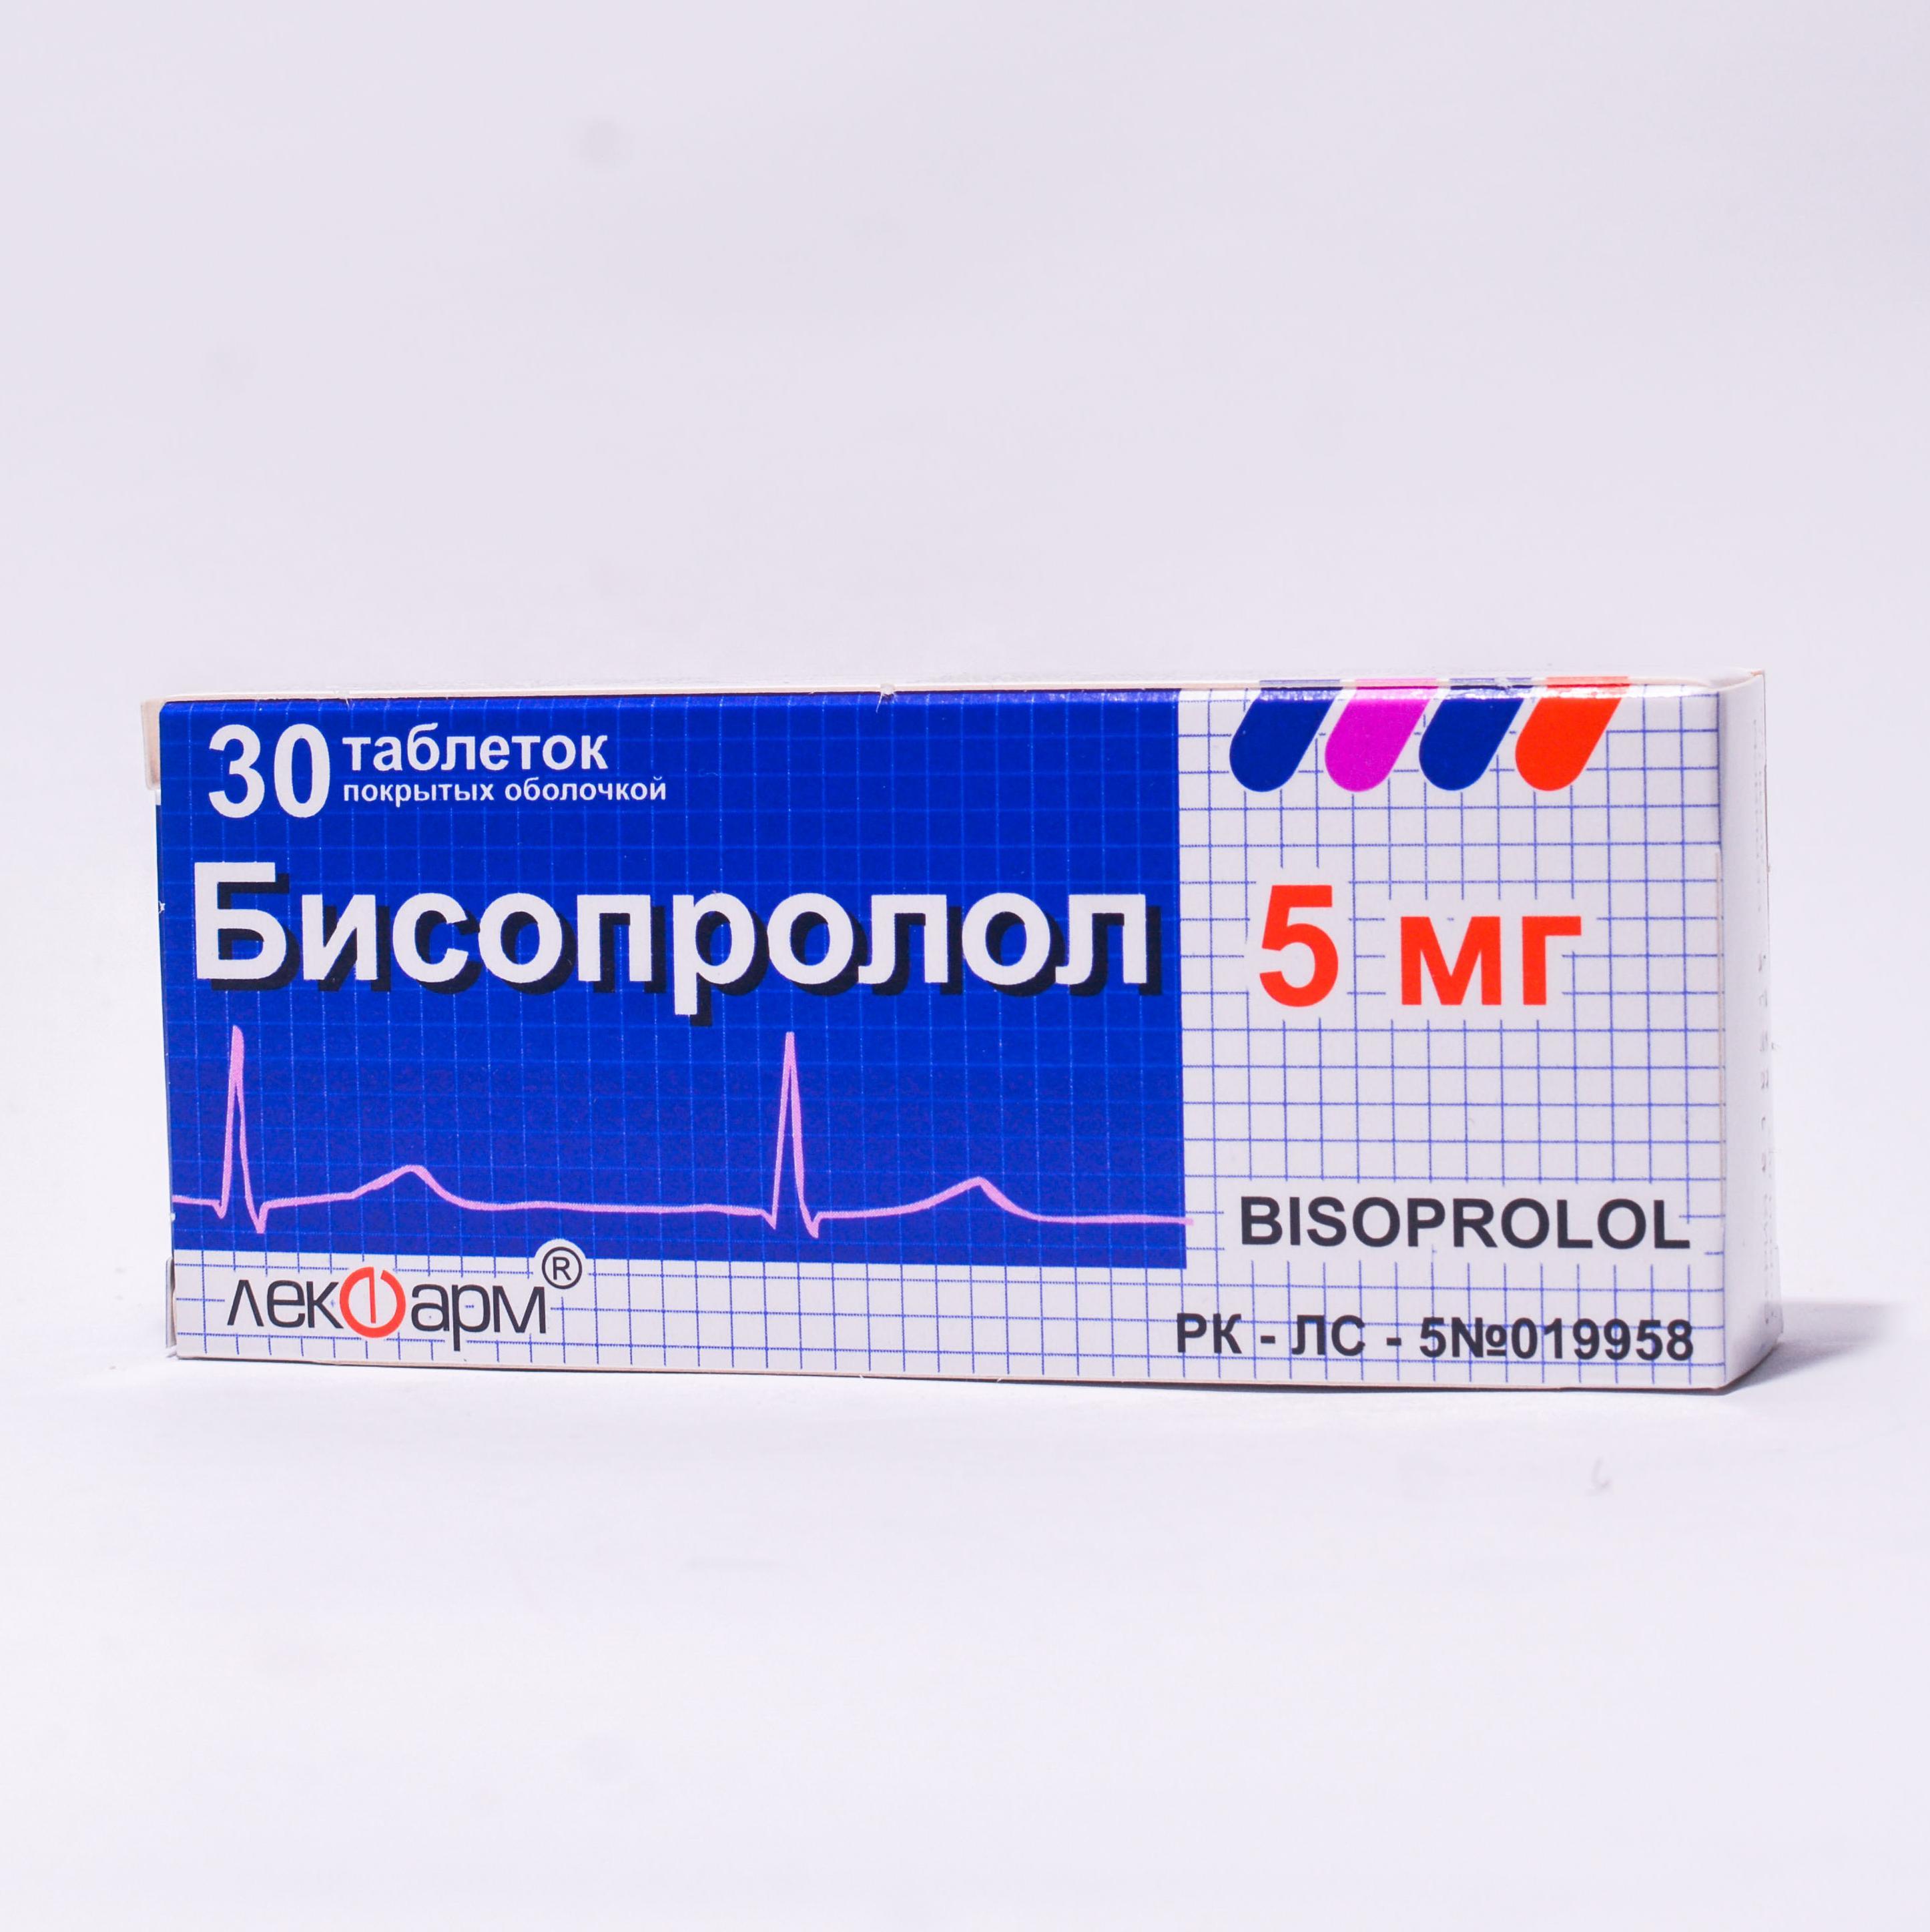 Кардоритм таблетки 10 мг № 30 в Астане: цена в аптеках + инструкция .